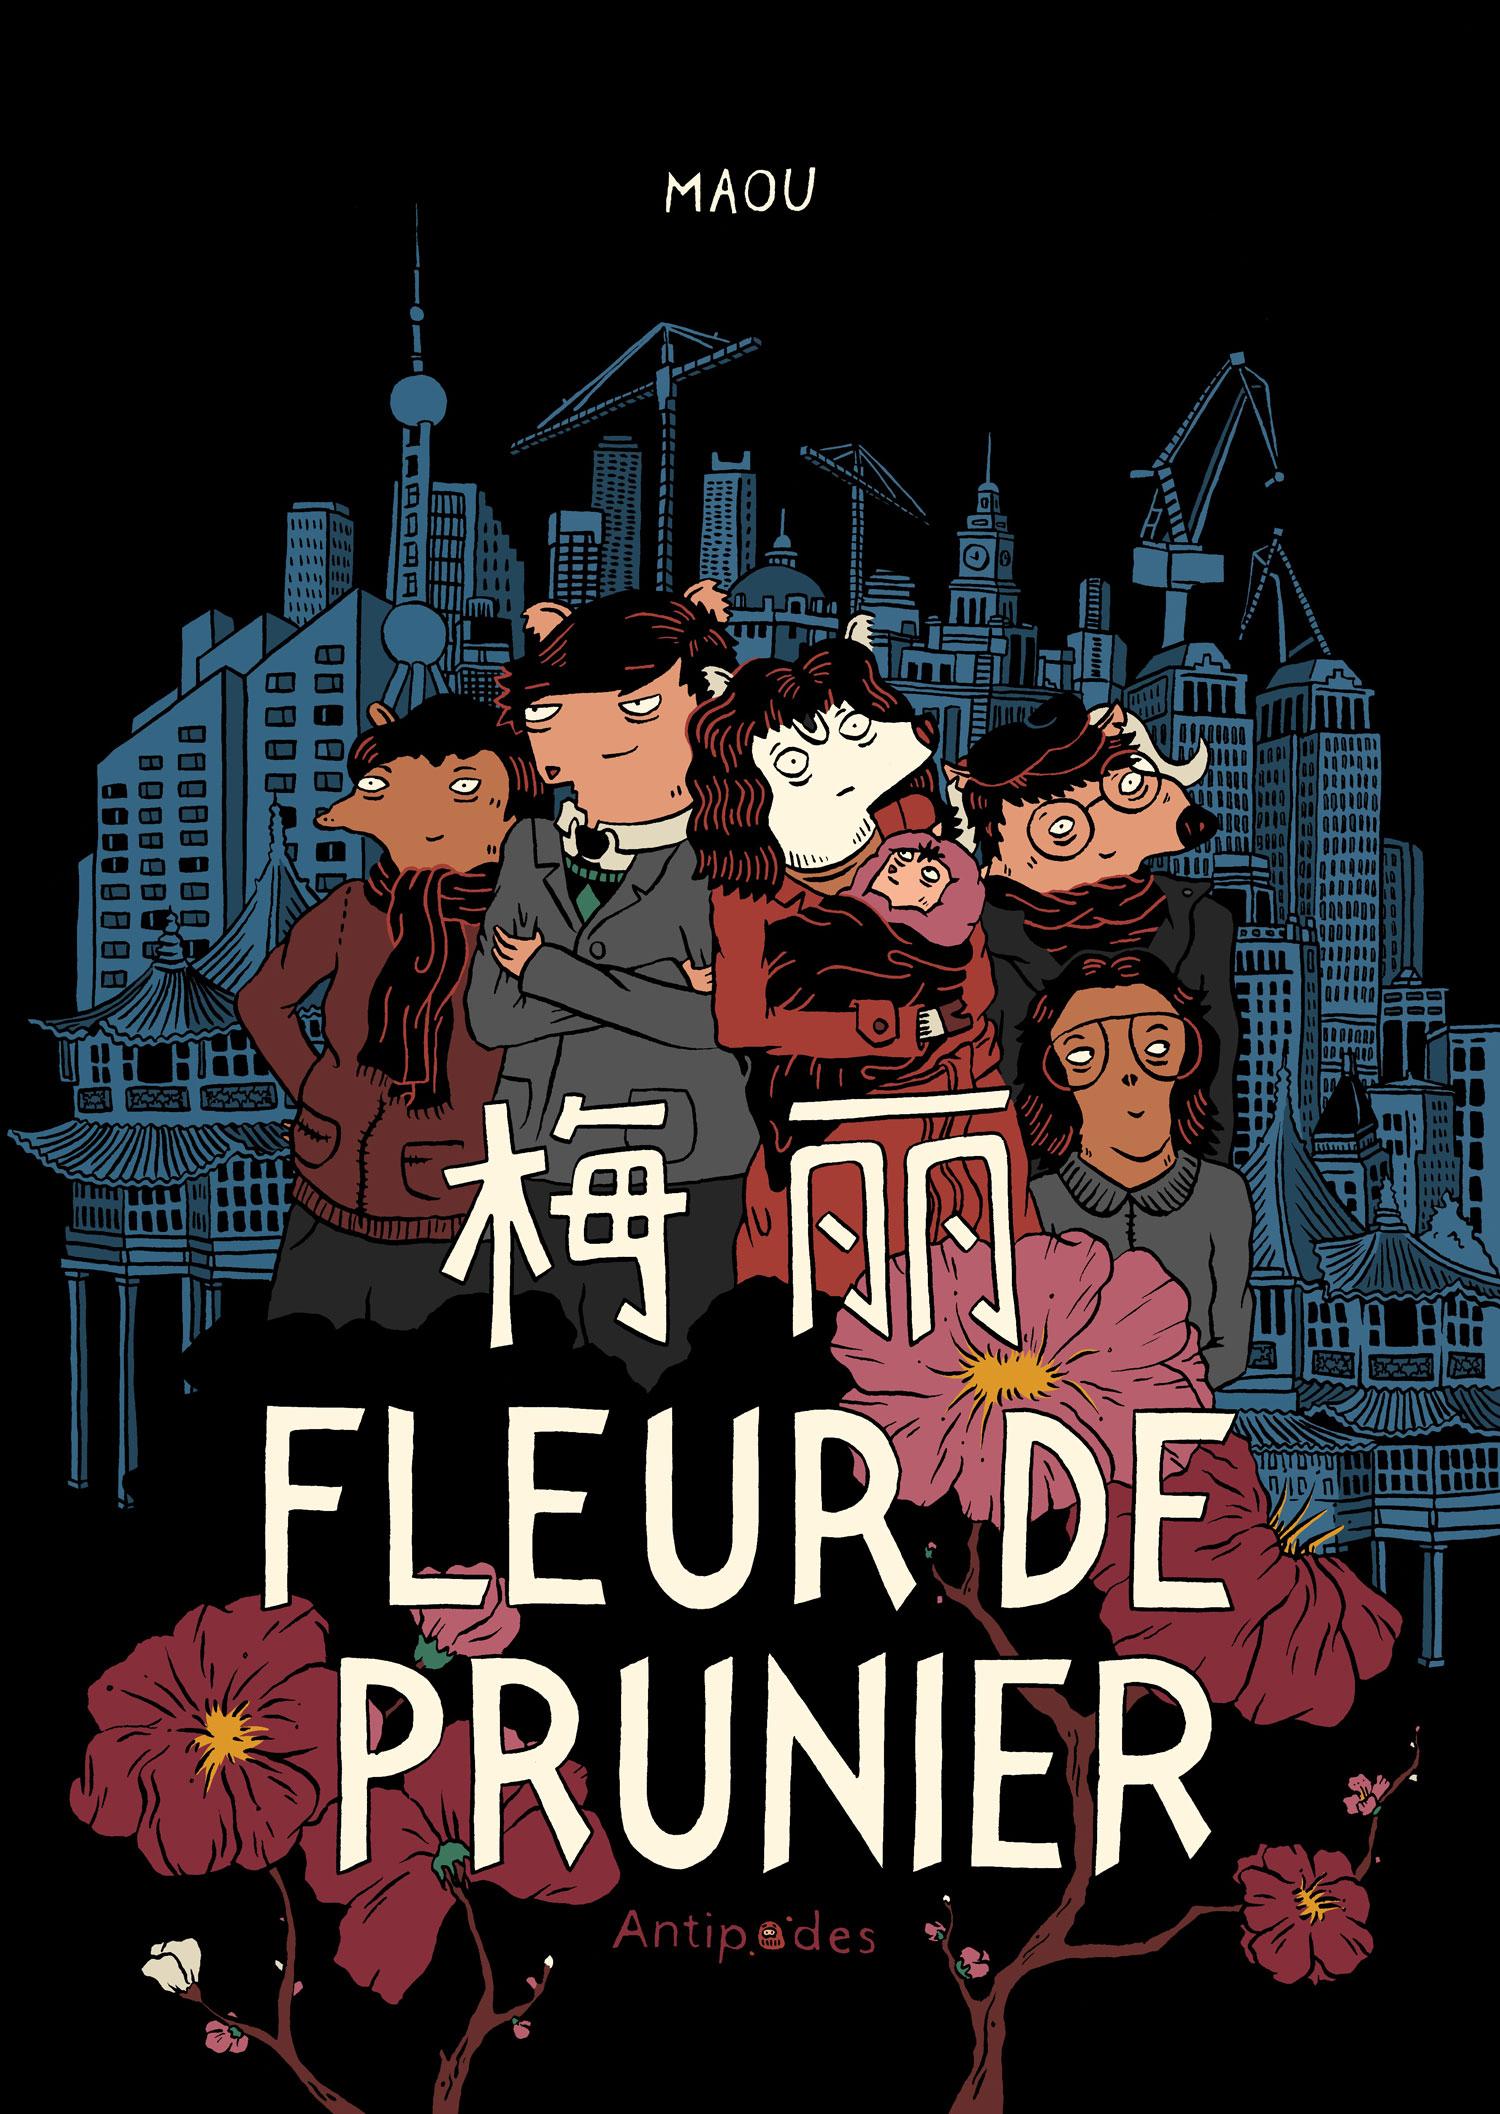 La couverture de la BD "Fleur de Prunier" de Maou. [Antipodes]